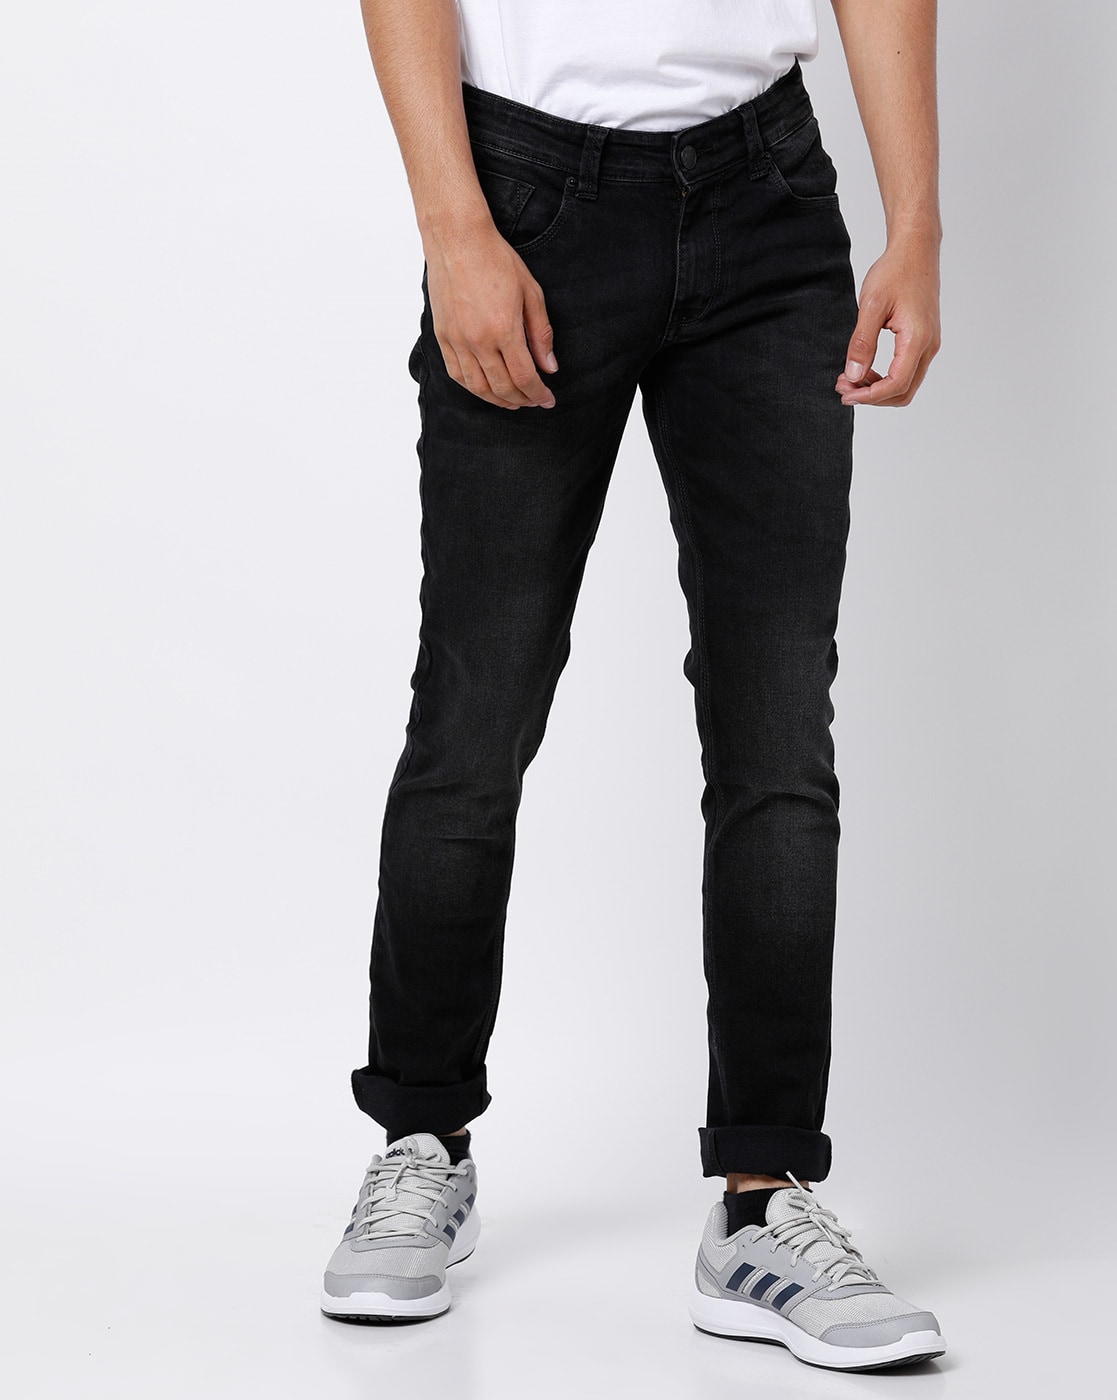 Buy Carbon Black Jeans for Men by SPYKAR Online  Ajiocom